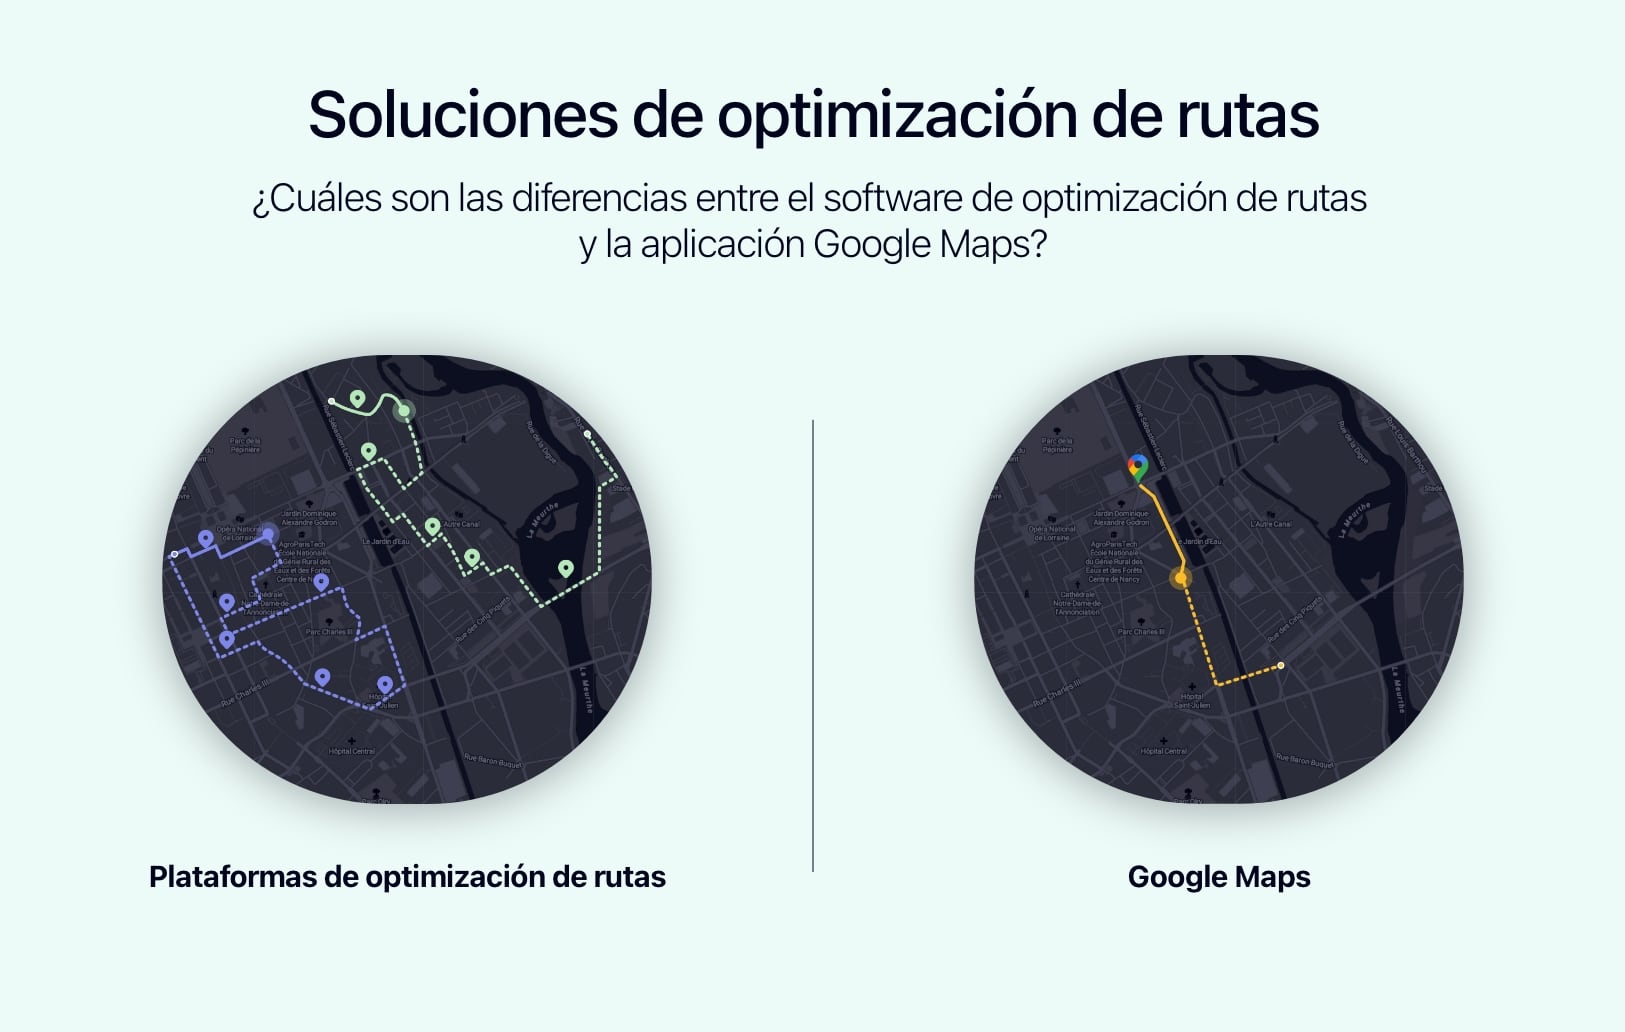 Diagrama del funcionamiento de Google Maps comparado con un software de optimización de rutas.